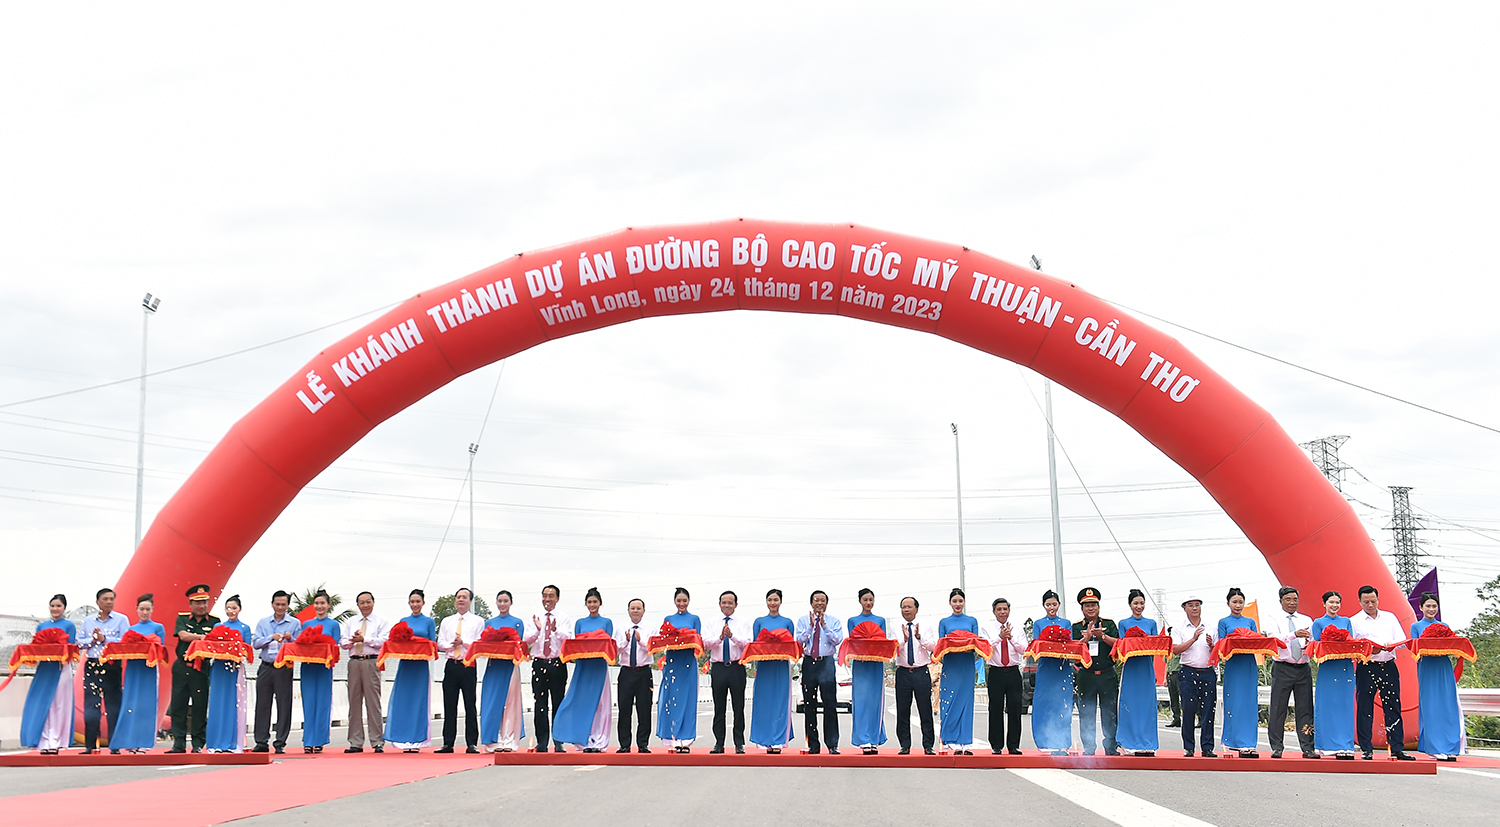 Đại biểu cắt băng khánh thành tại đầu cầu Vĩnh Long với dự án cao tốc Mỹ Thuận – Cần Thơ